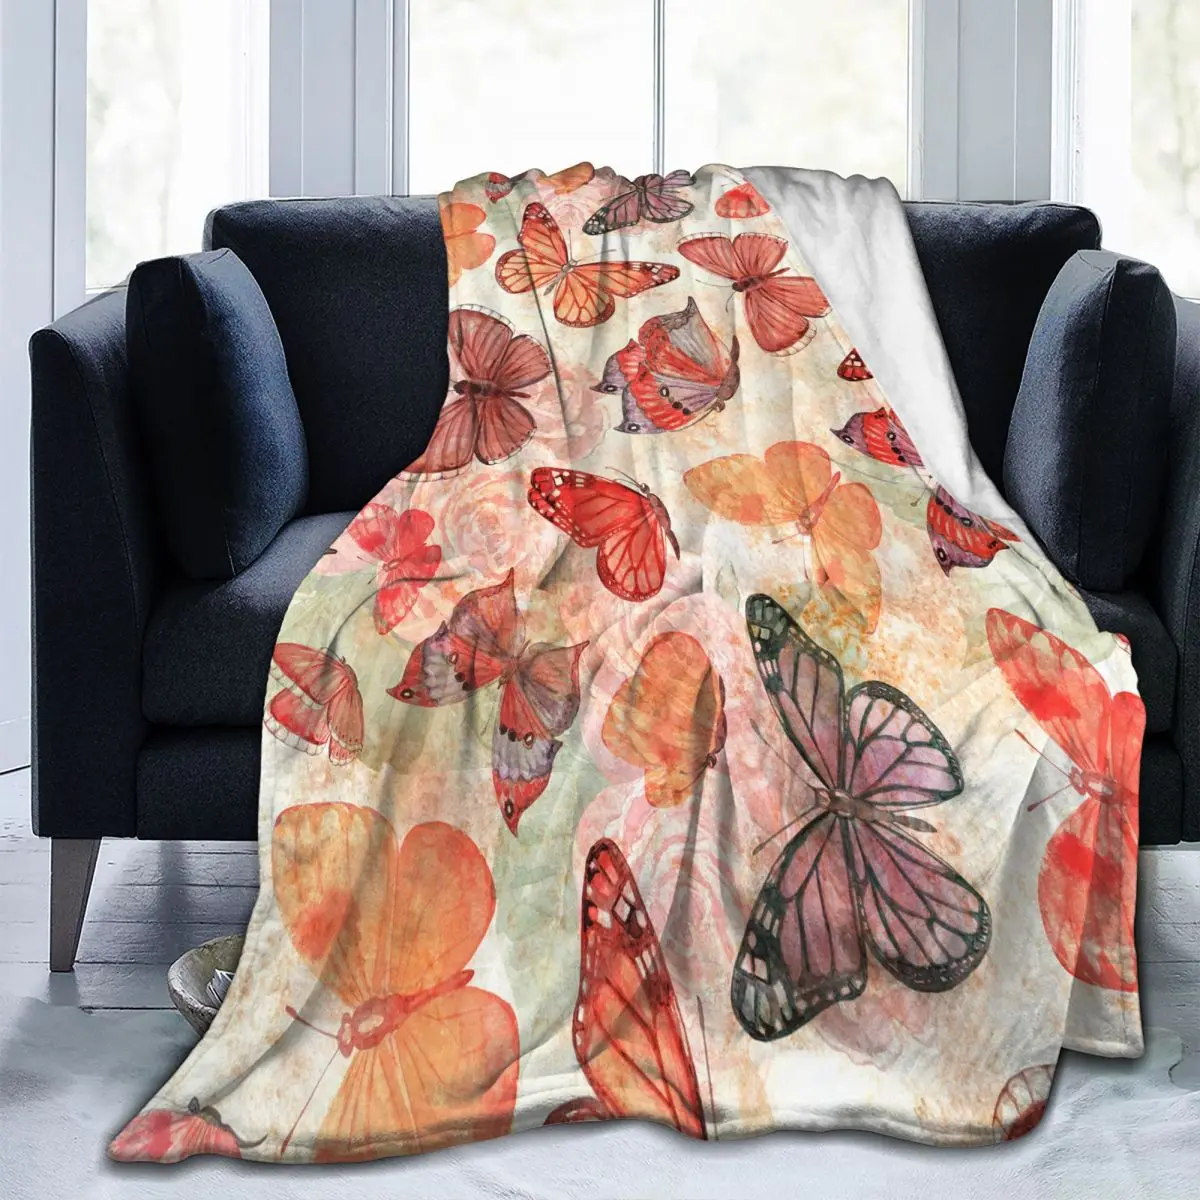 

Фланелевое Одеяло с красивыми летящими бабочками, мягкое тонкое Флисовое одеяло, покрывало для кровати, дивана, домашний декор, Прямая пост...